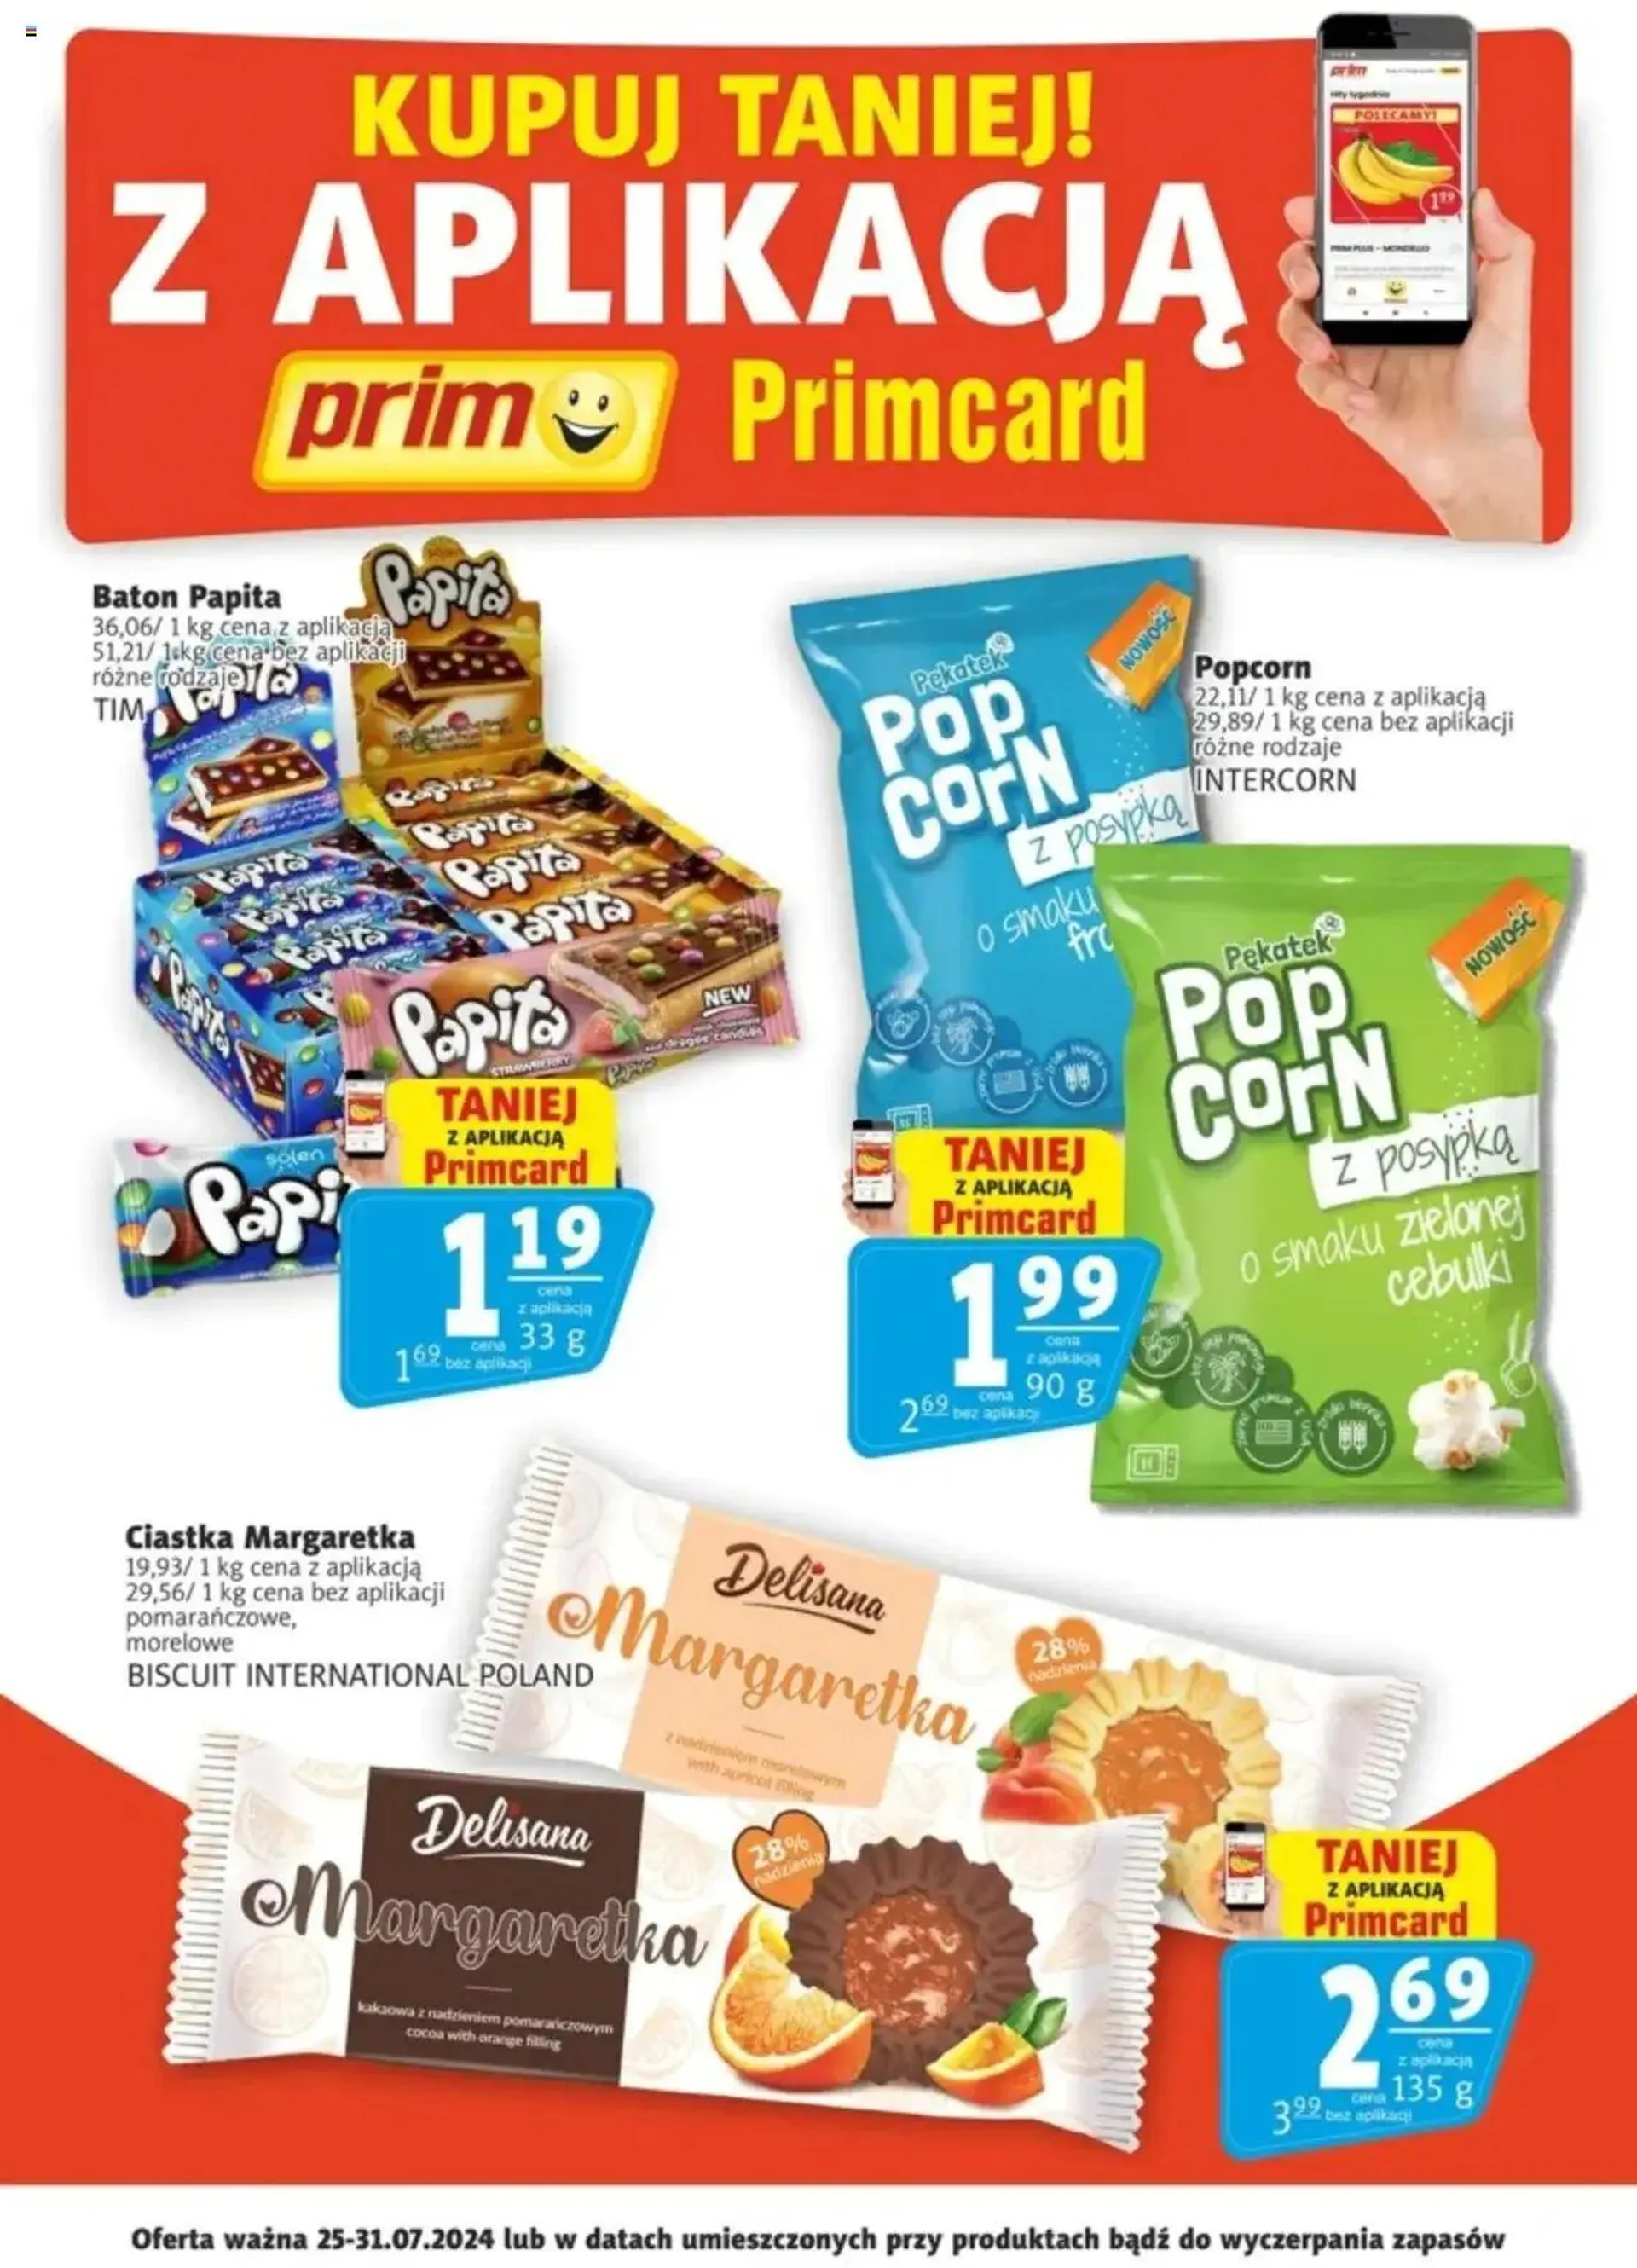 Prim Market Promocje - Primcard - 0